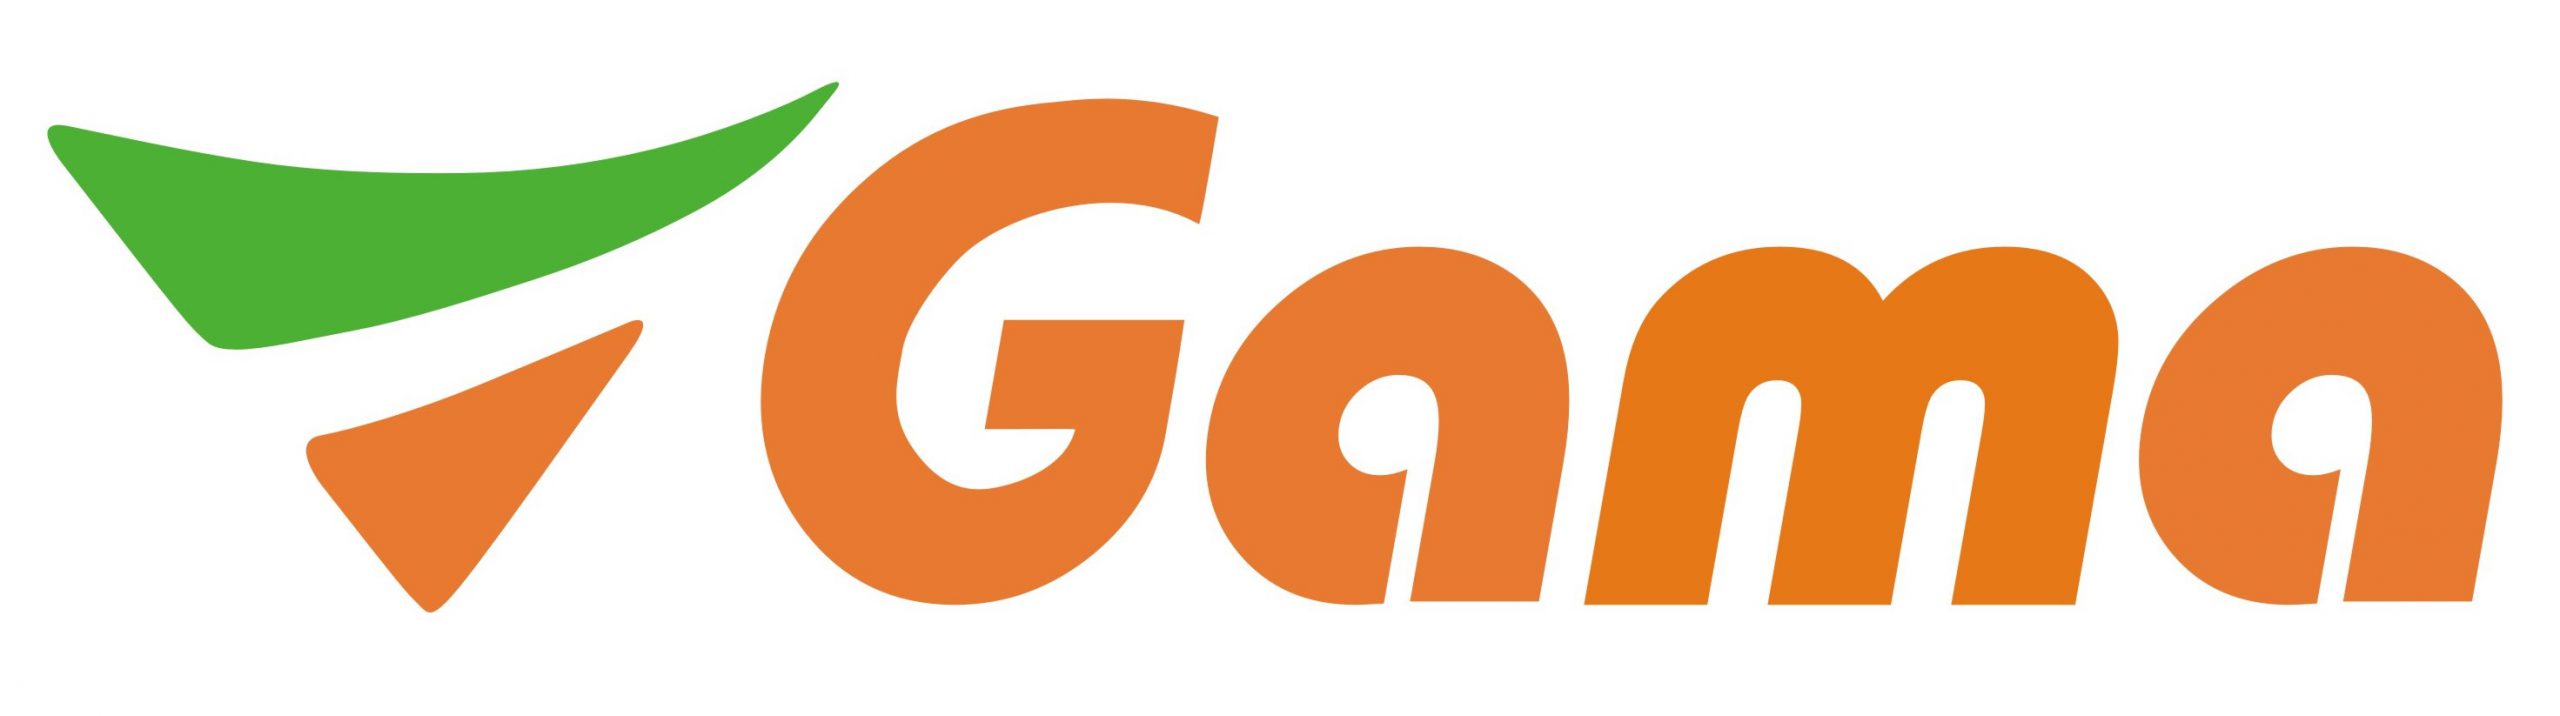 Sieć Gama od końca marca poszerzyła się o dwa nowe sklepy